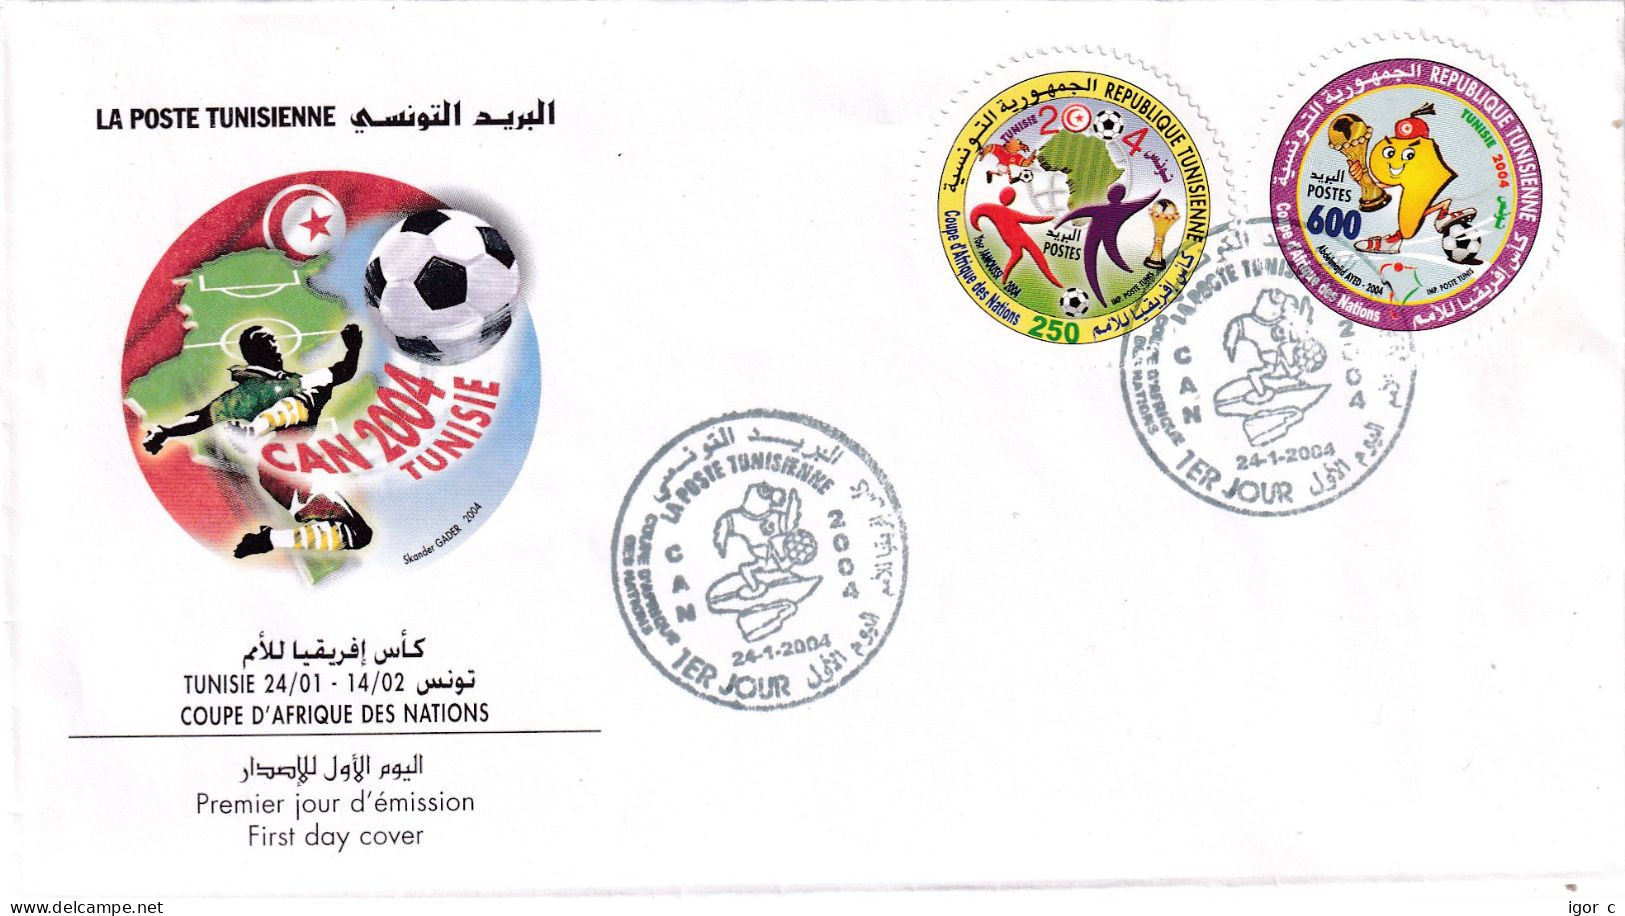 Tunis Tunisia 2004 Cover; Football Fussball Soccer Calcio; Coupe D'Afrique Des Nations - Copa Africana De Naciones